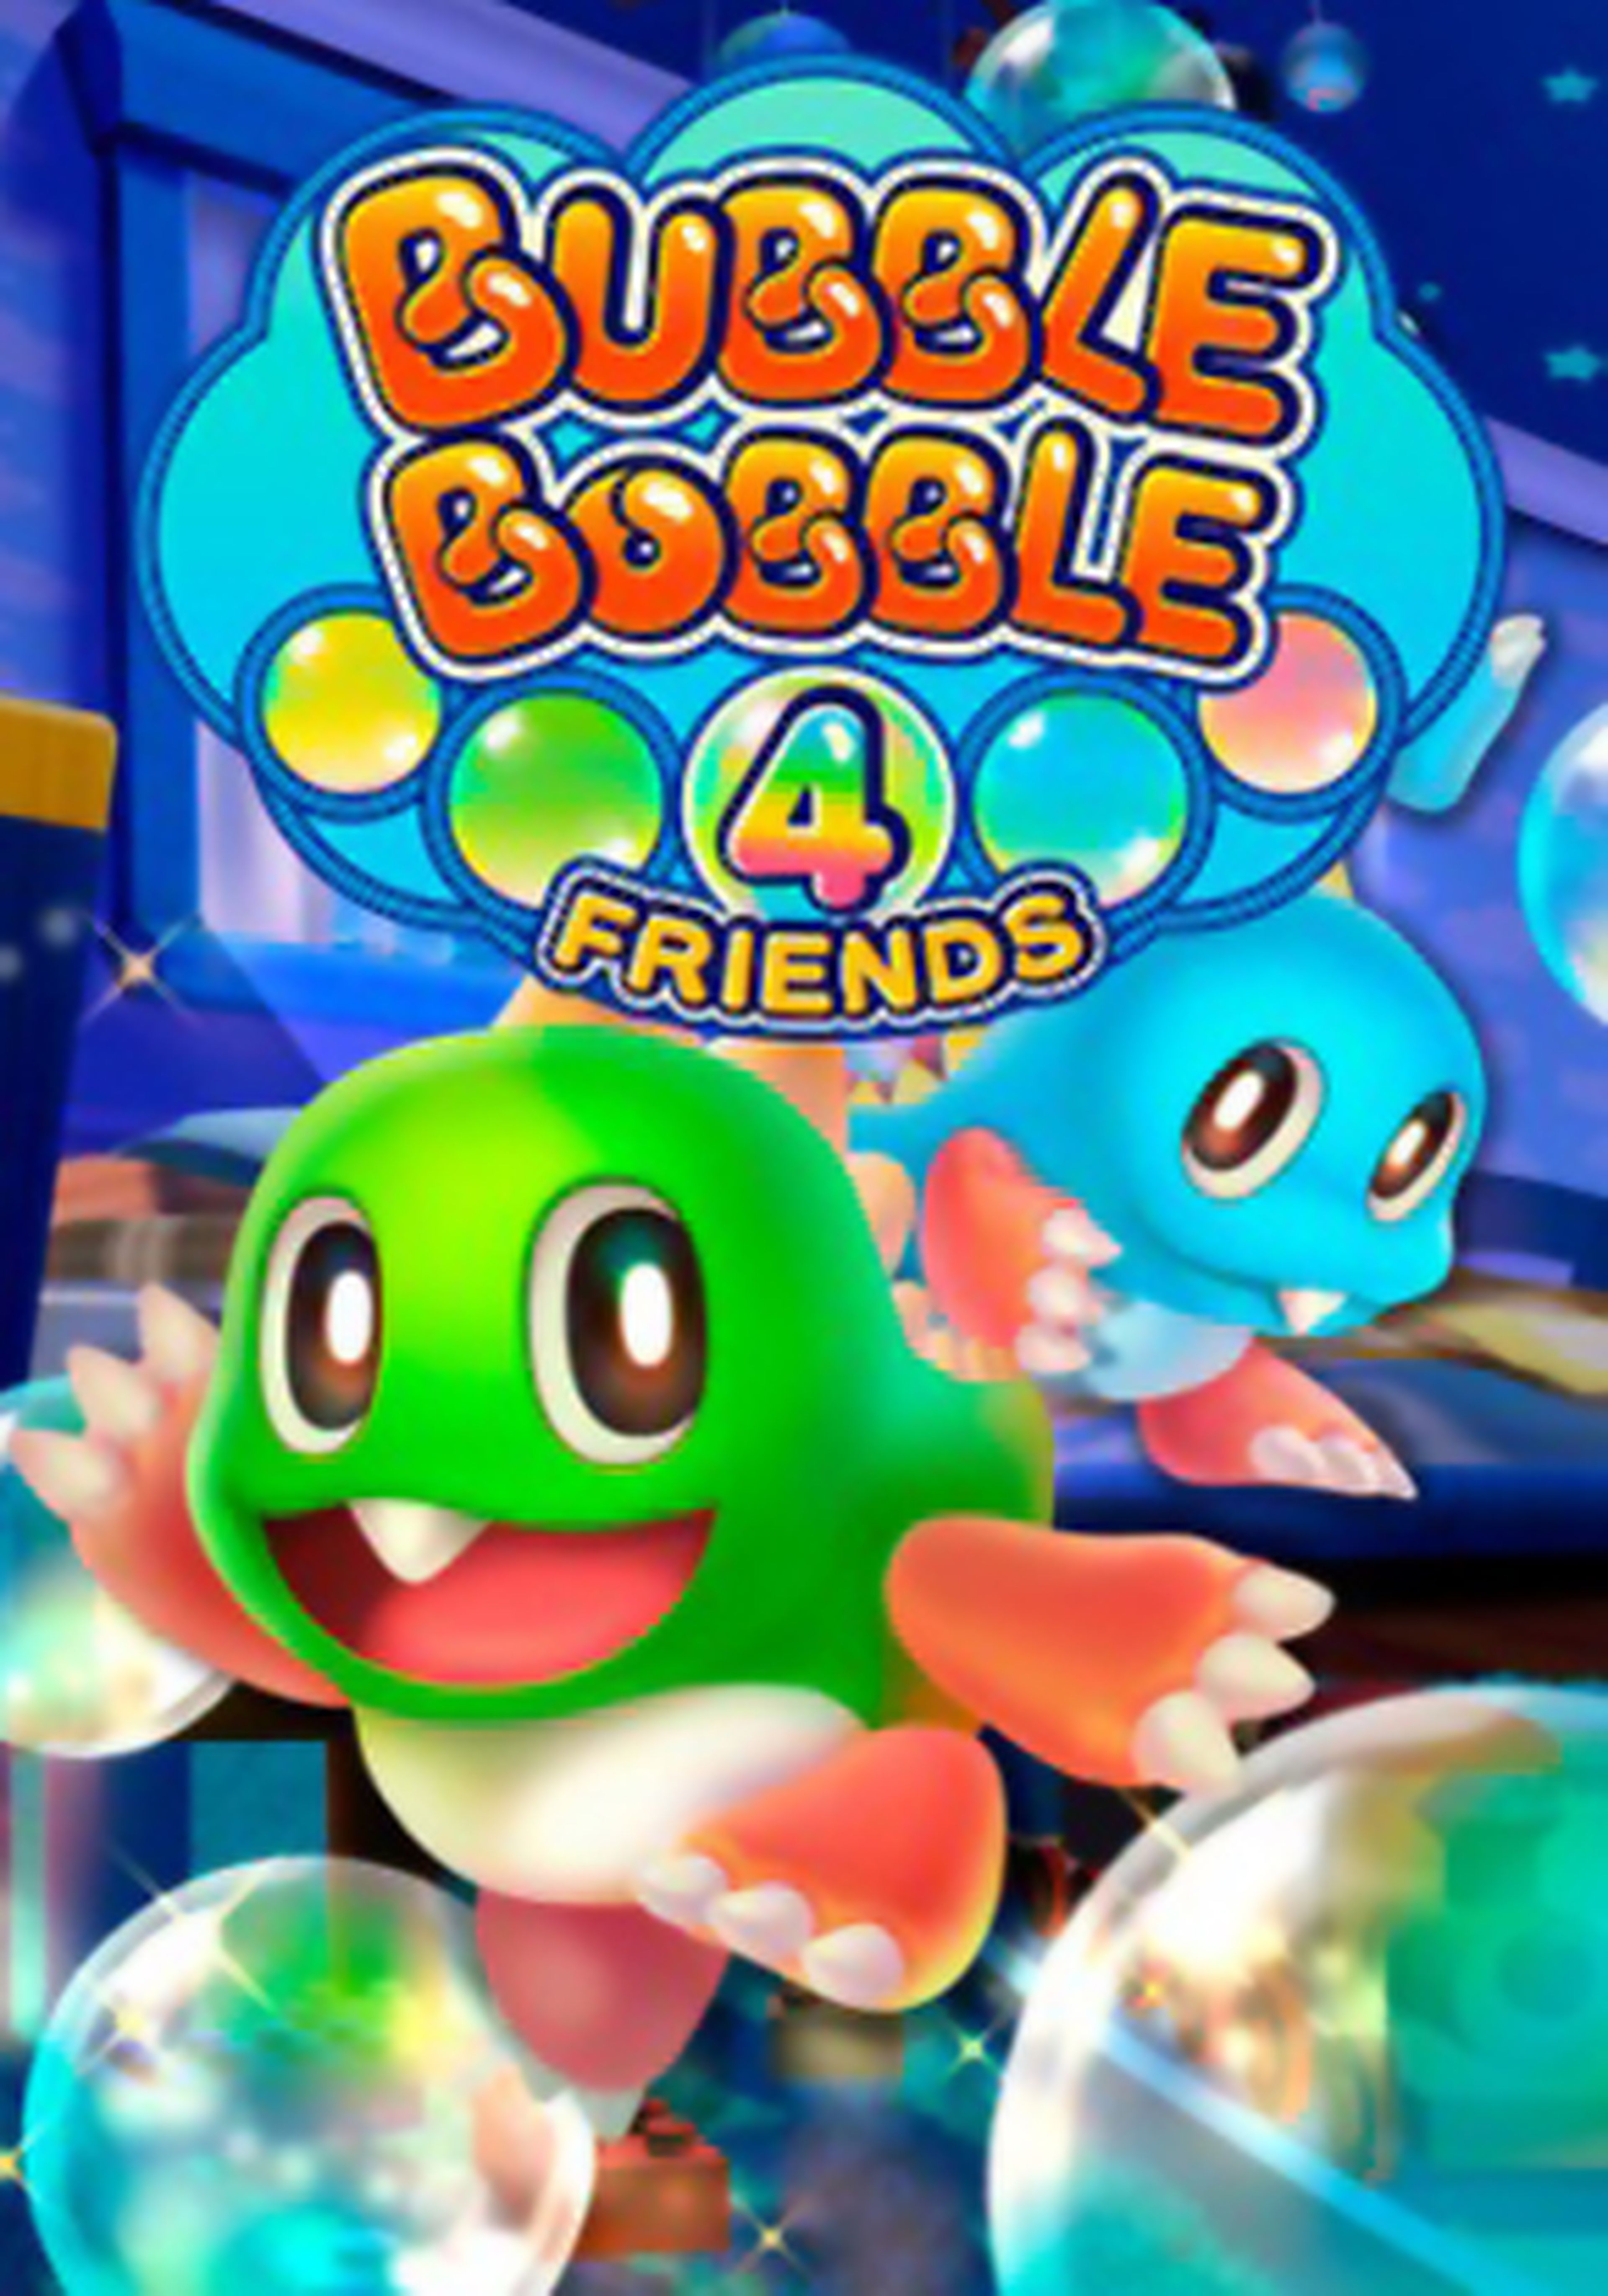 Bubble Bobble 4 Friends cartel